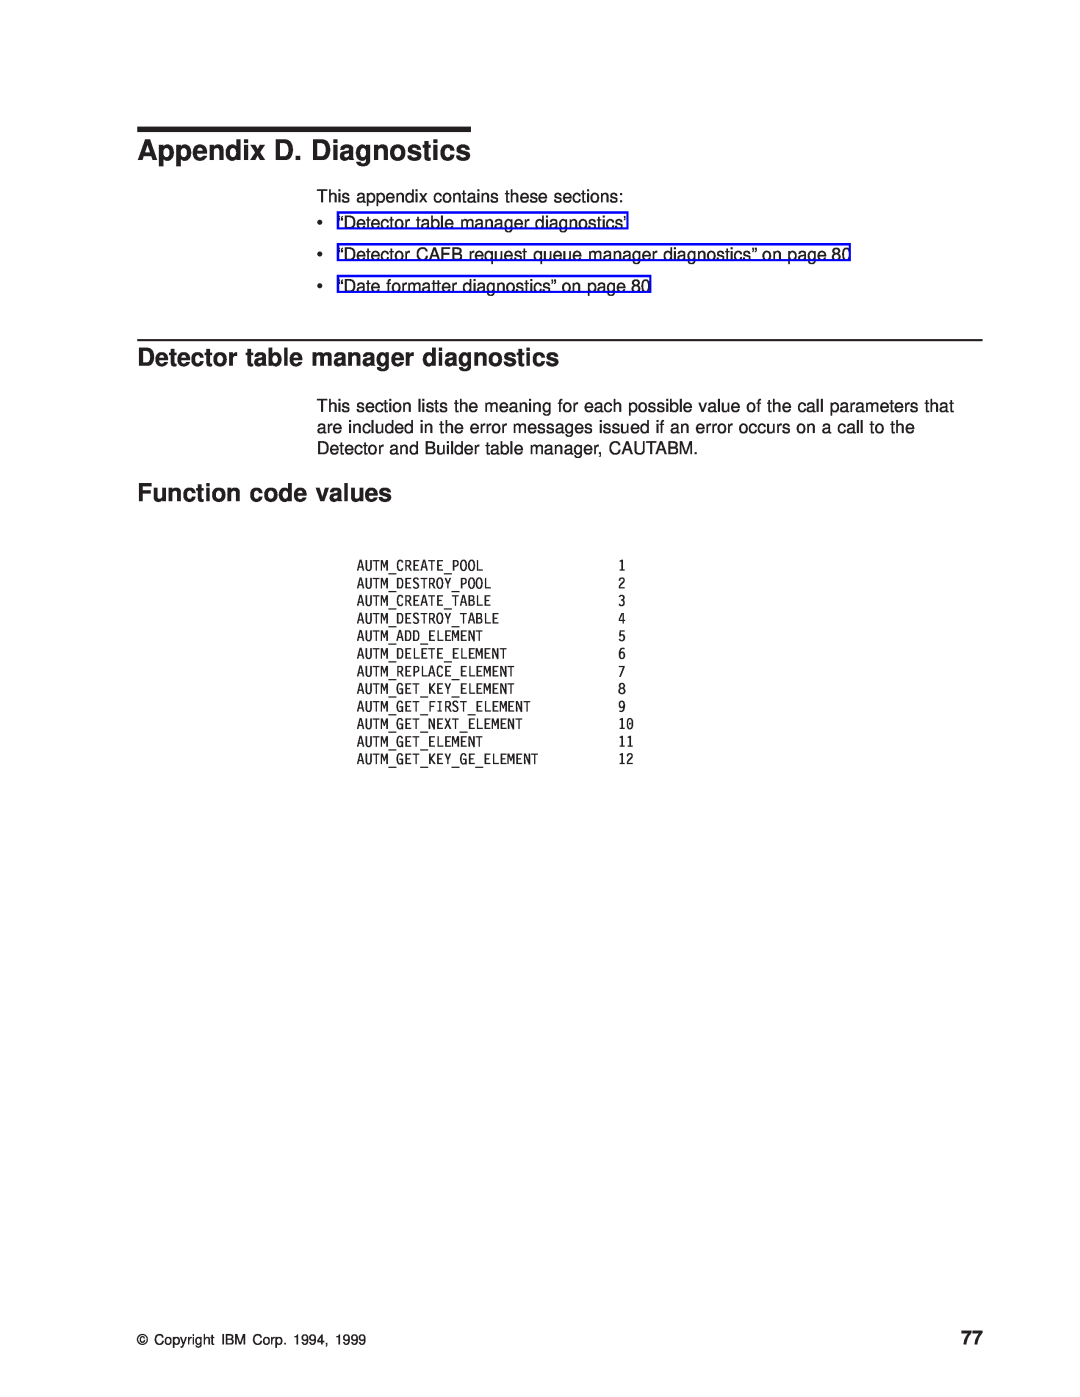 IBM OS manual Appendix D. Diagnostics, Detector table manager diagnostics, Function code values 